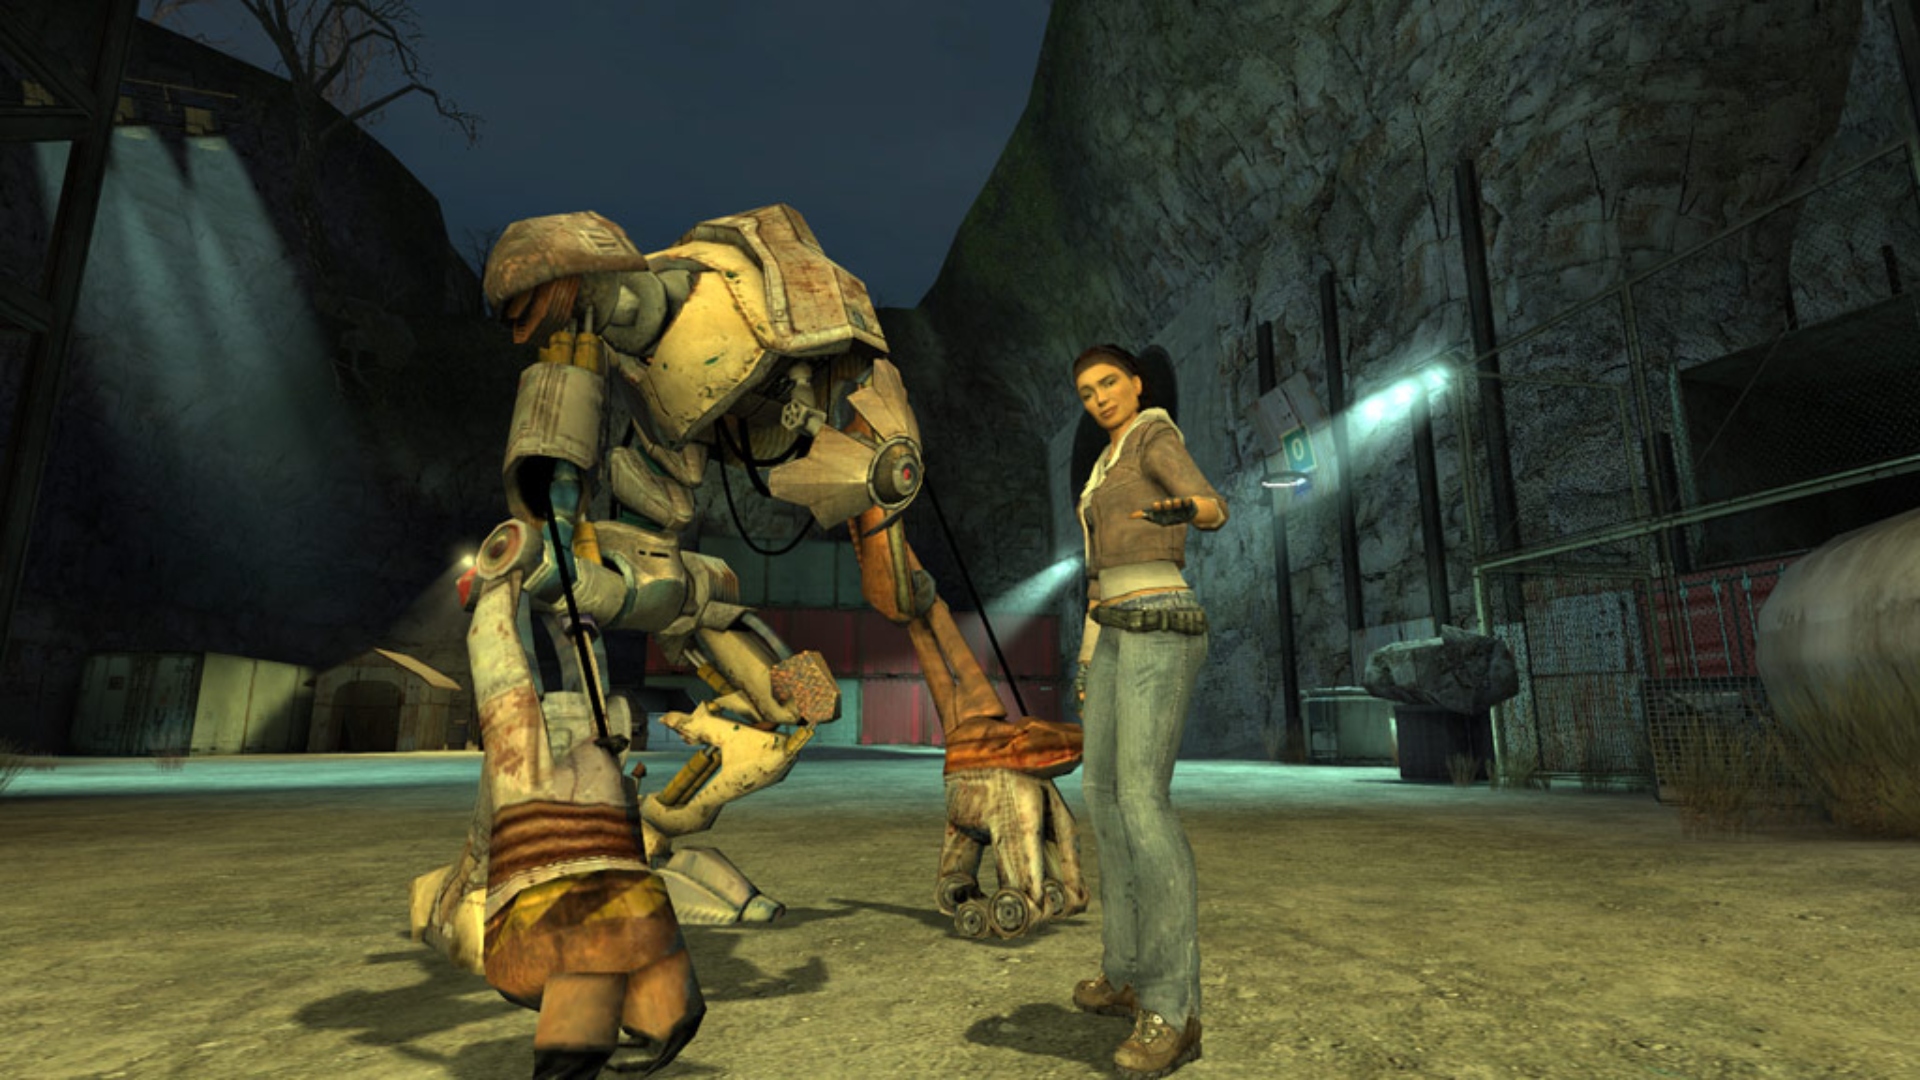 Novela de vida media: una mujer joven, Alyx Vance, se encuentra junto a un robot gigante en la válvula FPS Juego Half-Life 2